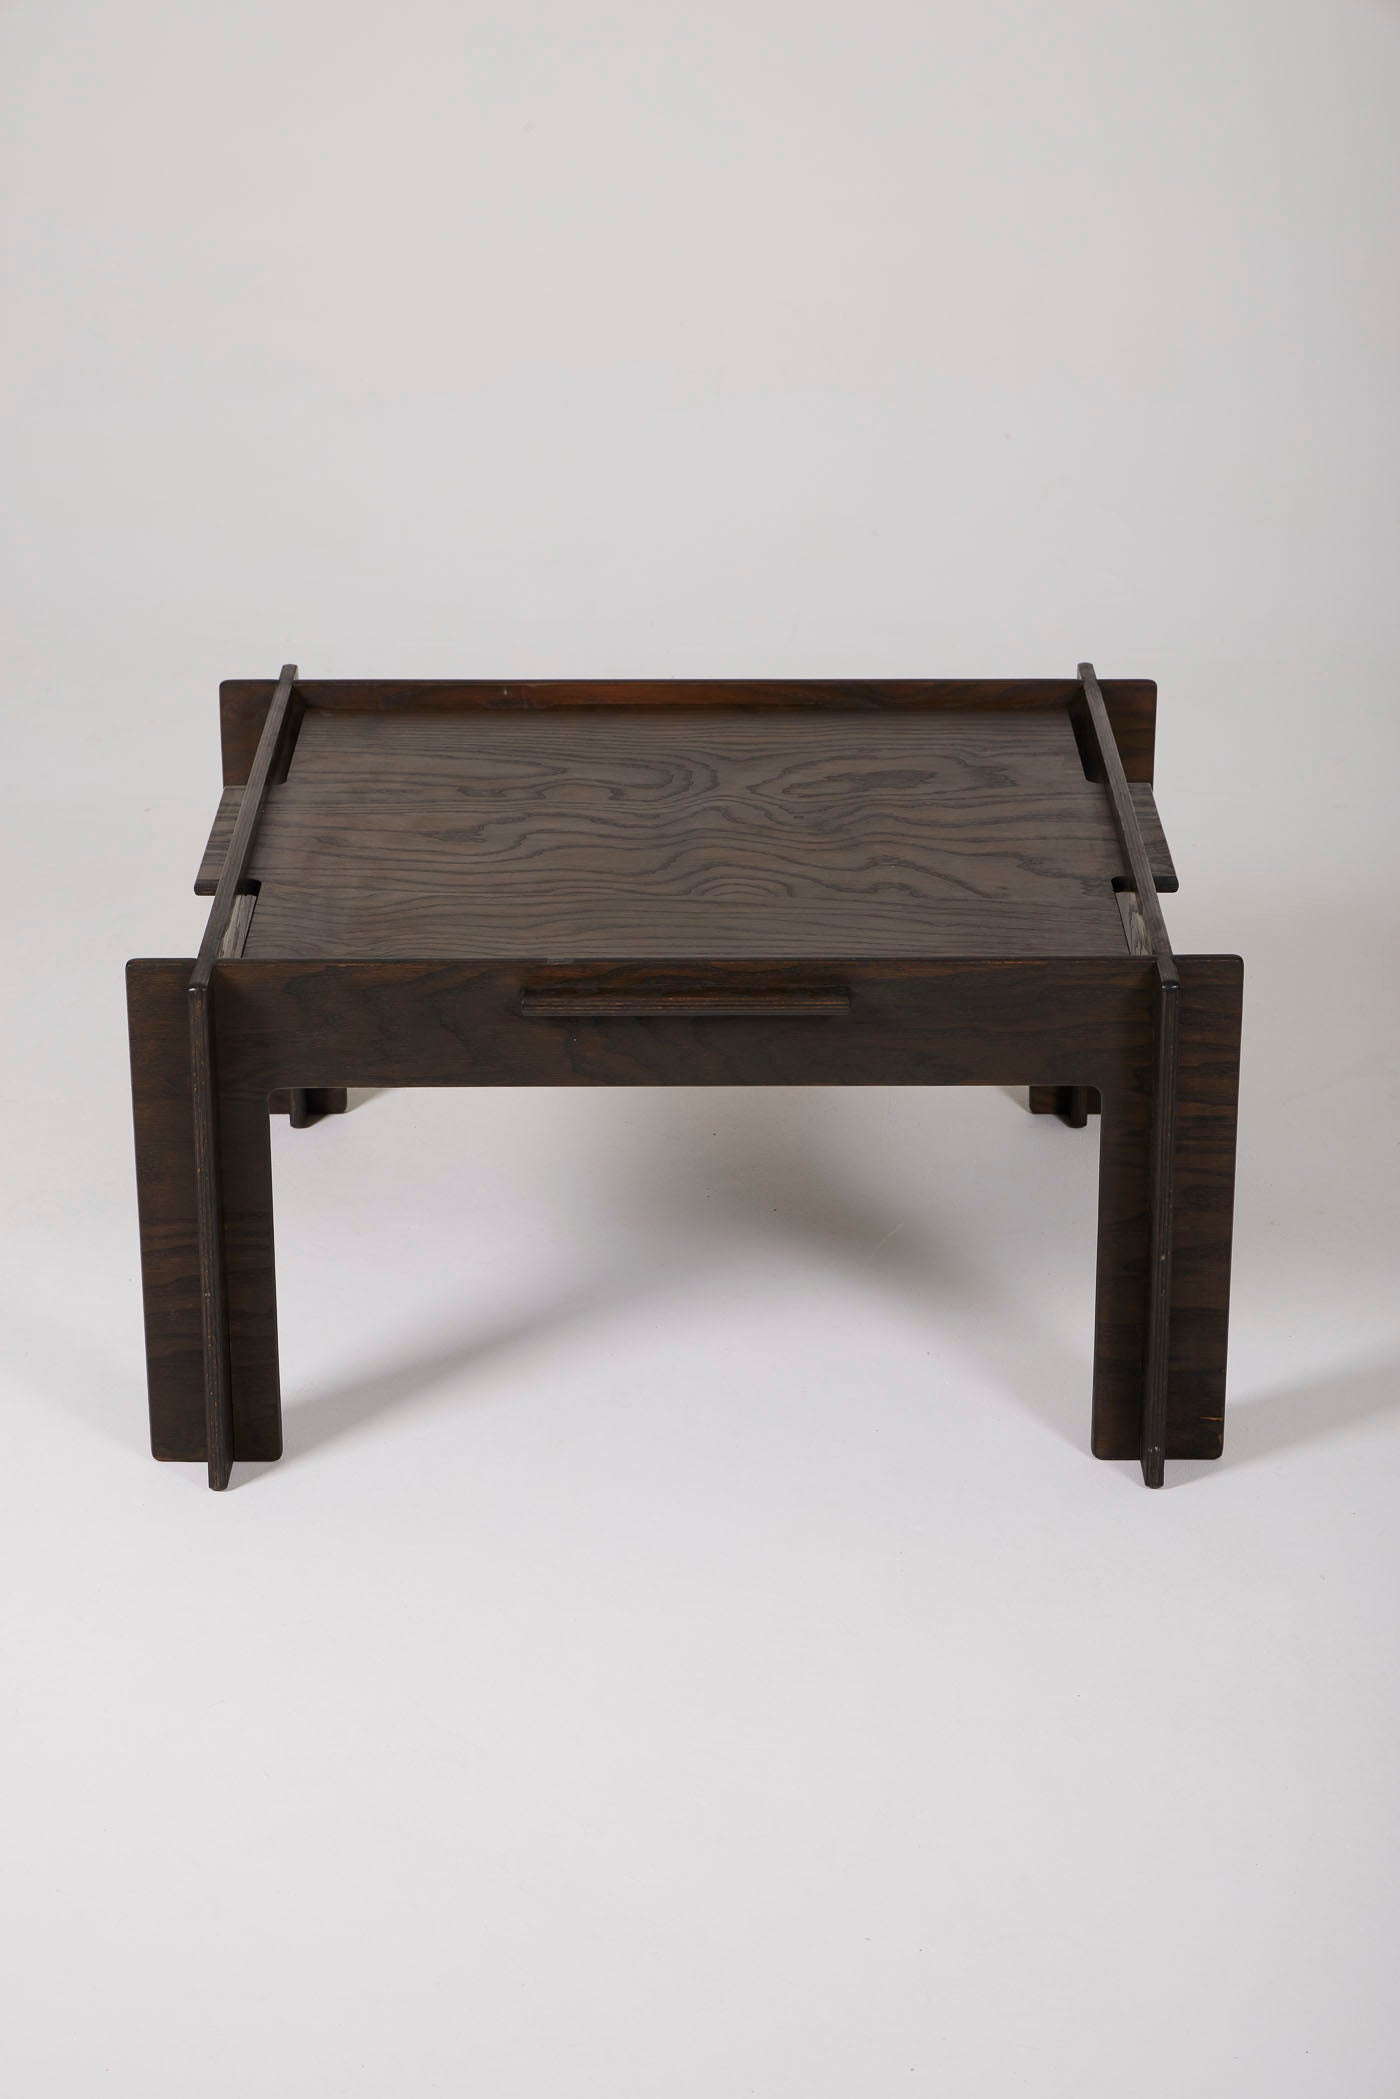 Arne Jacobsen coffee table